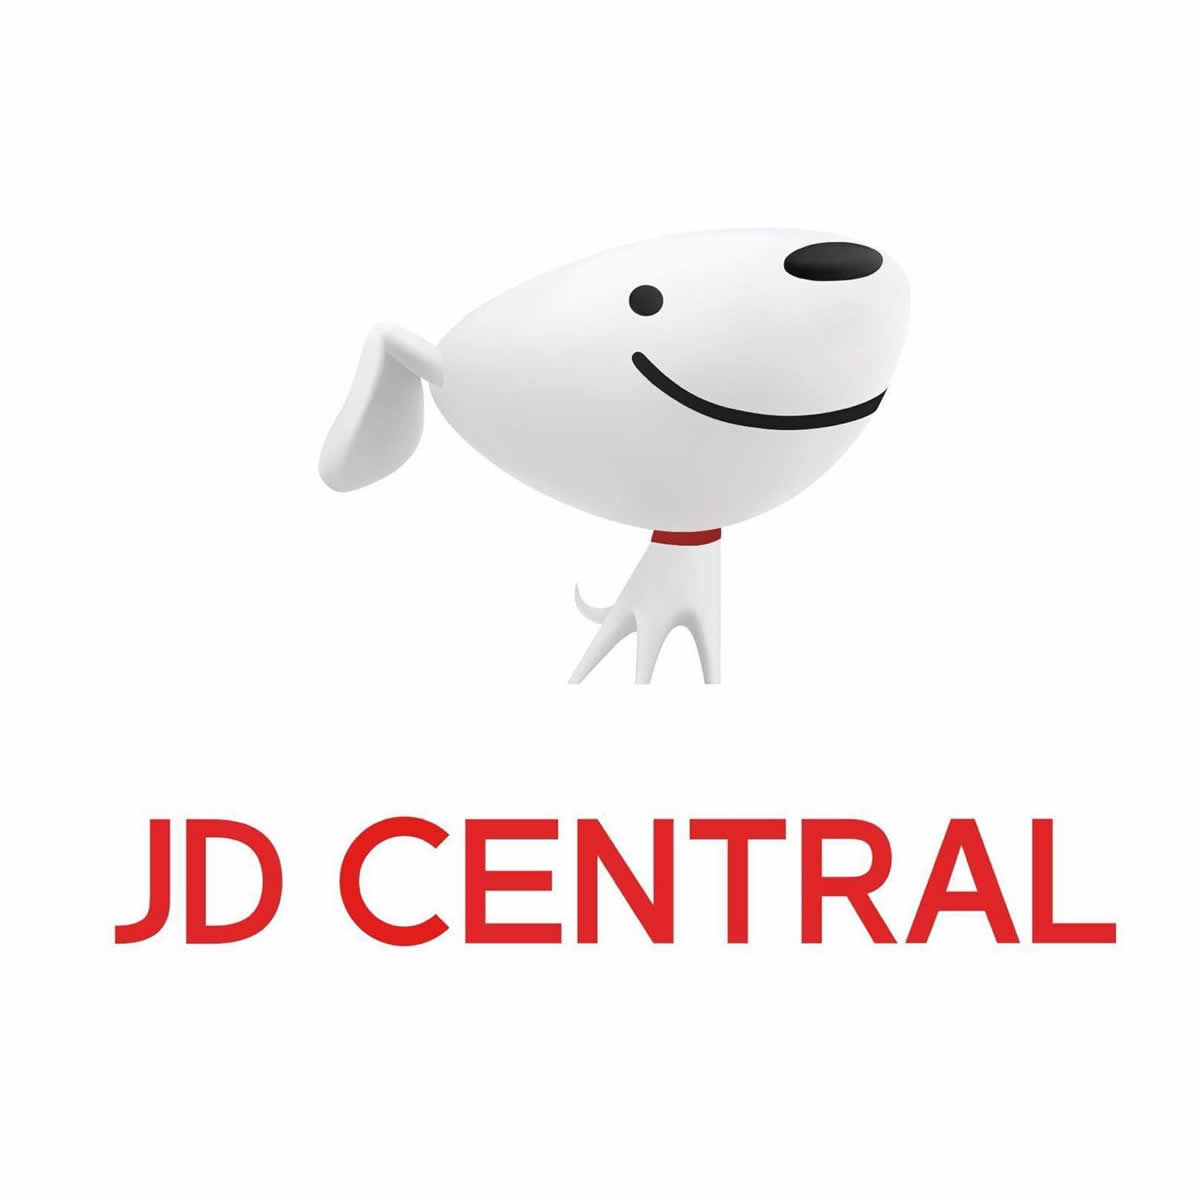 タイのJD CENTRAL、2023年3月3日で事業終了